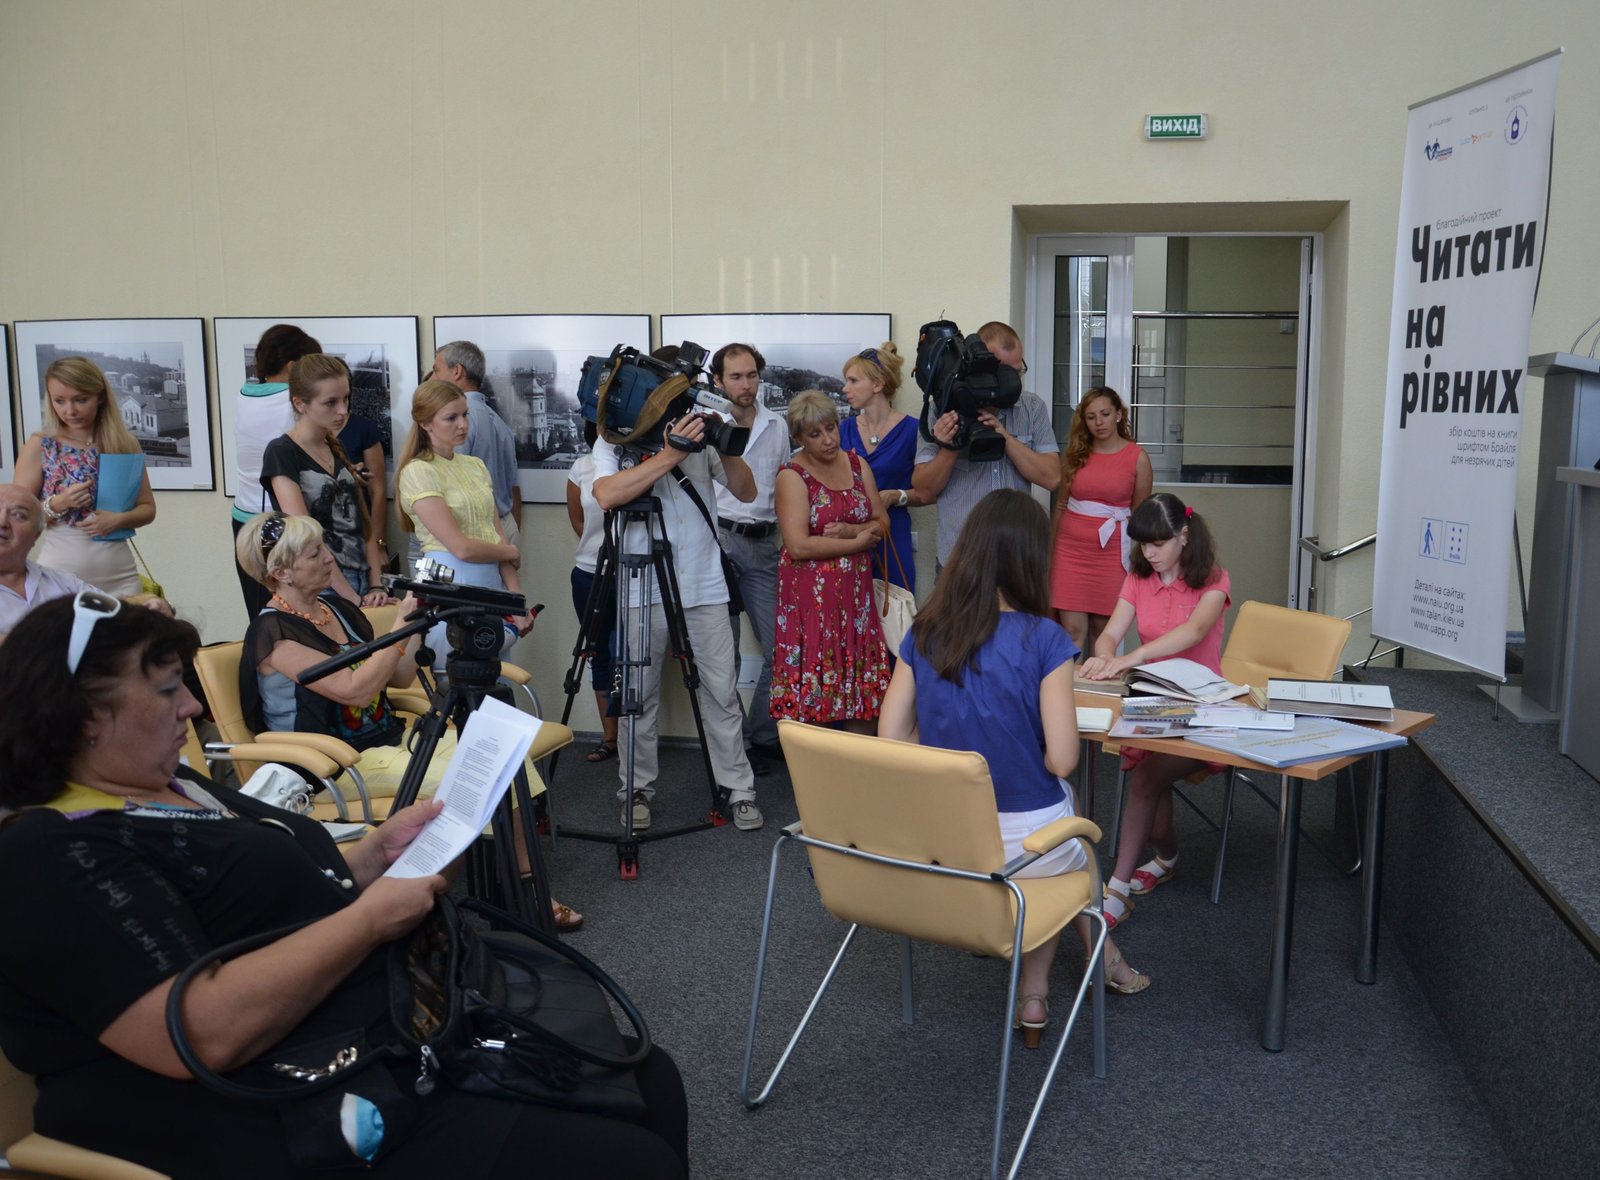 Стартует первый Всеукраинский благотворительный проєкт по сбору средств на создание книг для слепых детей